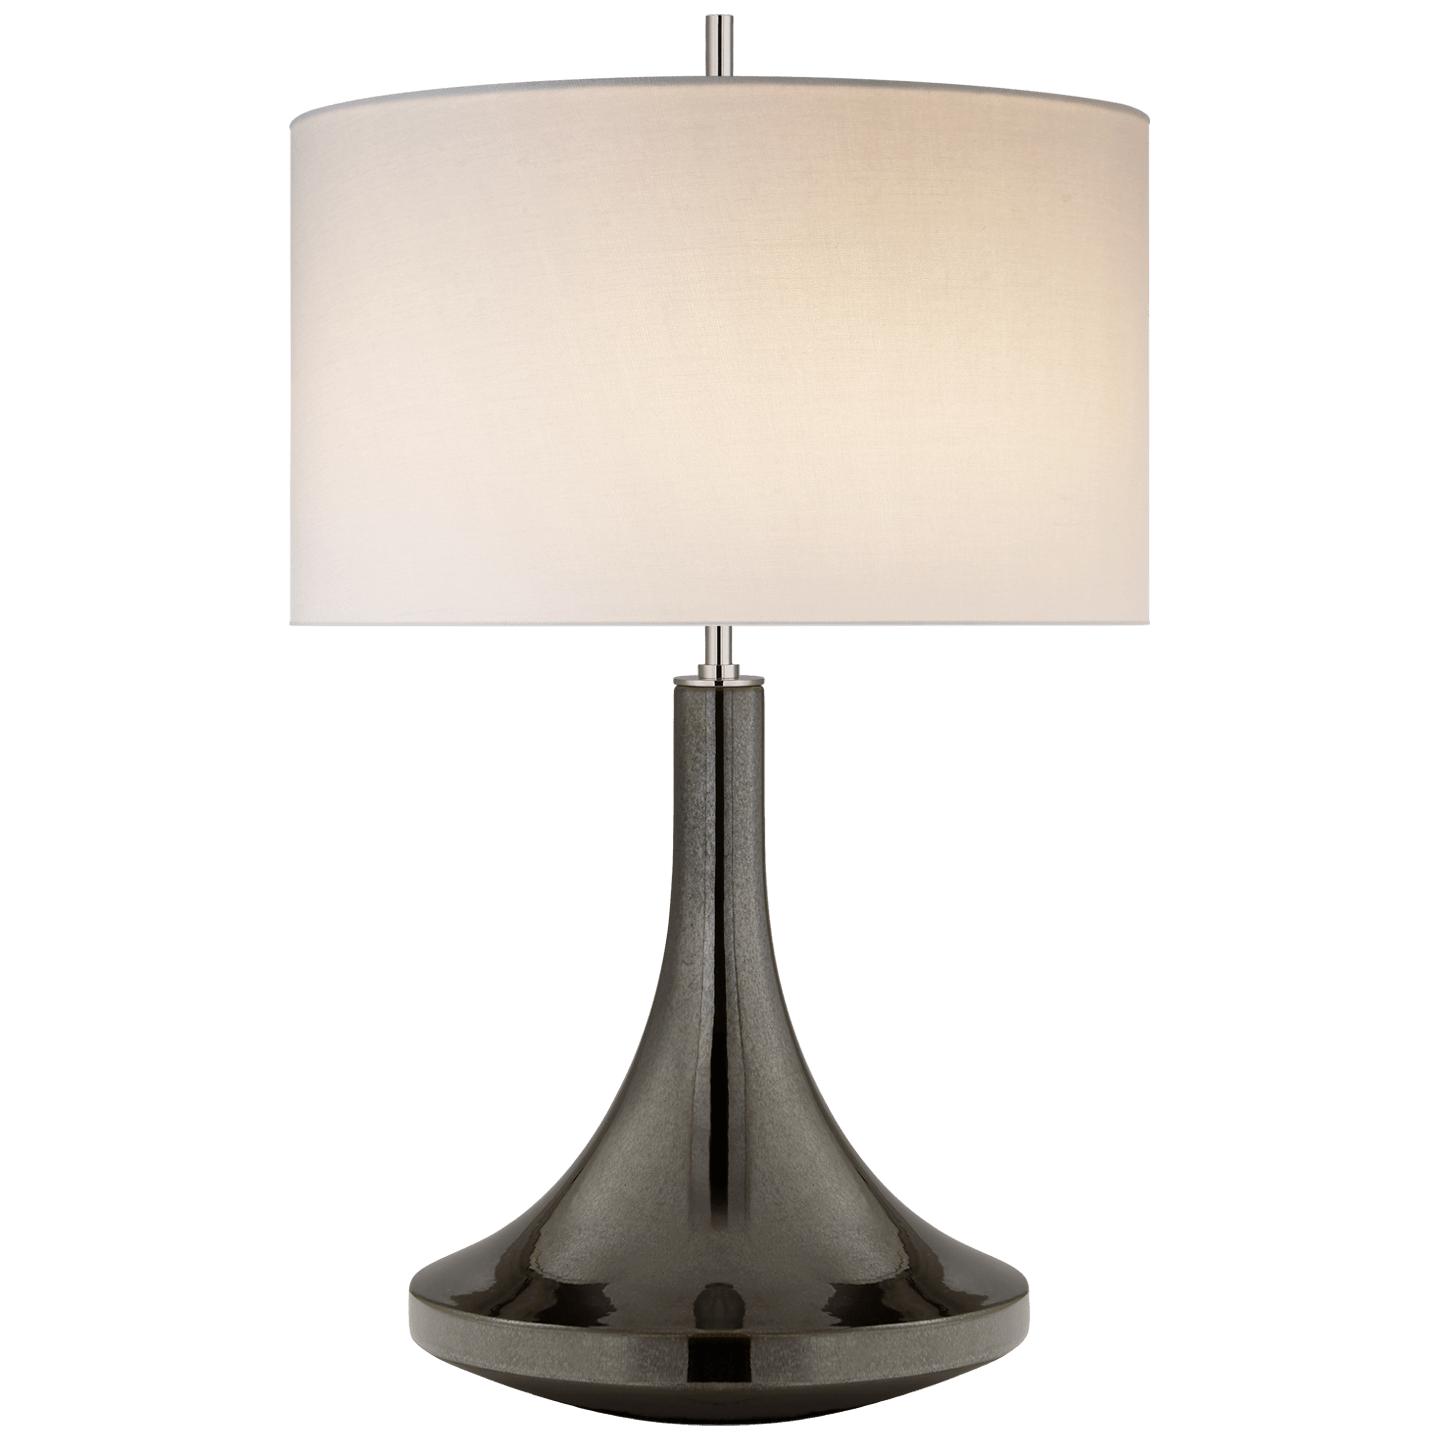 Купить Настольная лампа Minola Medium Table Lamp в интернет-магазине roooms.ru